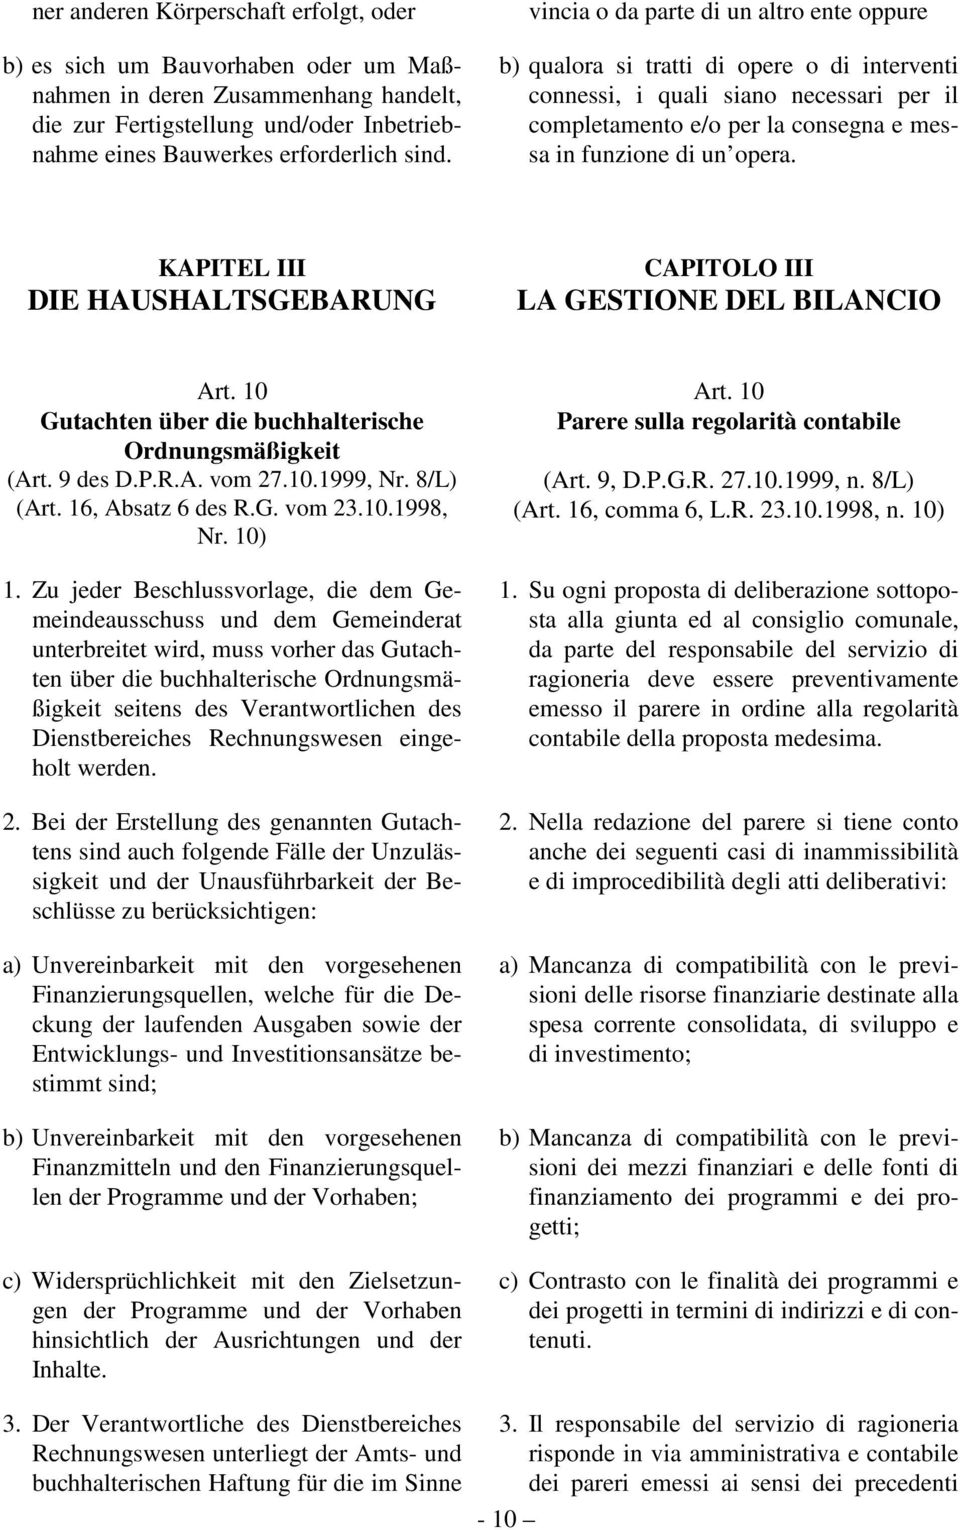 KAPITEL III DIE HAUSHALTSGEBARUNG CAPITOLO III LA GESTIONE DEL BILANCIO Art. 10 Gutachten über die buchhalterische Ordnungsmäßigkeit (Art. 9 des D.P.R.A. vom 27.10.1999, Nr. 8/L) (Art.